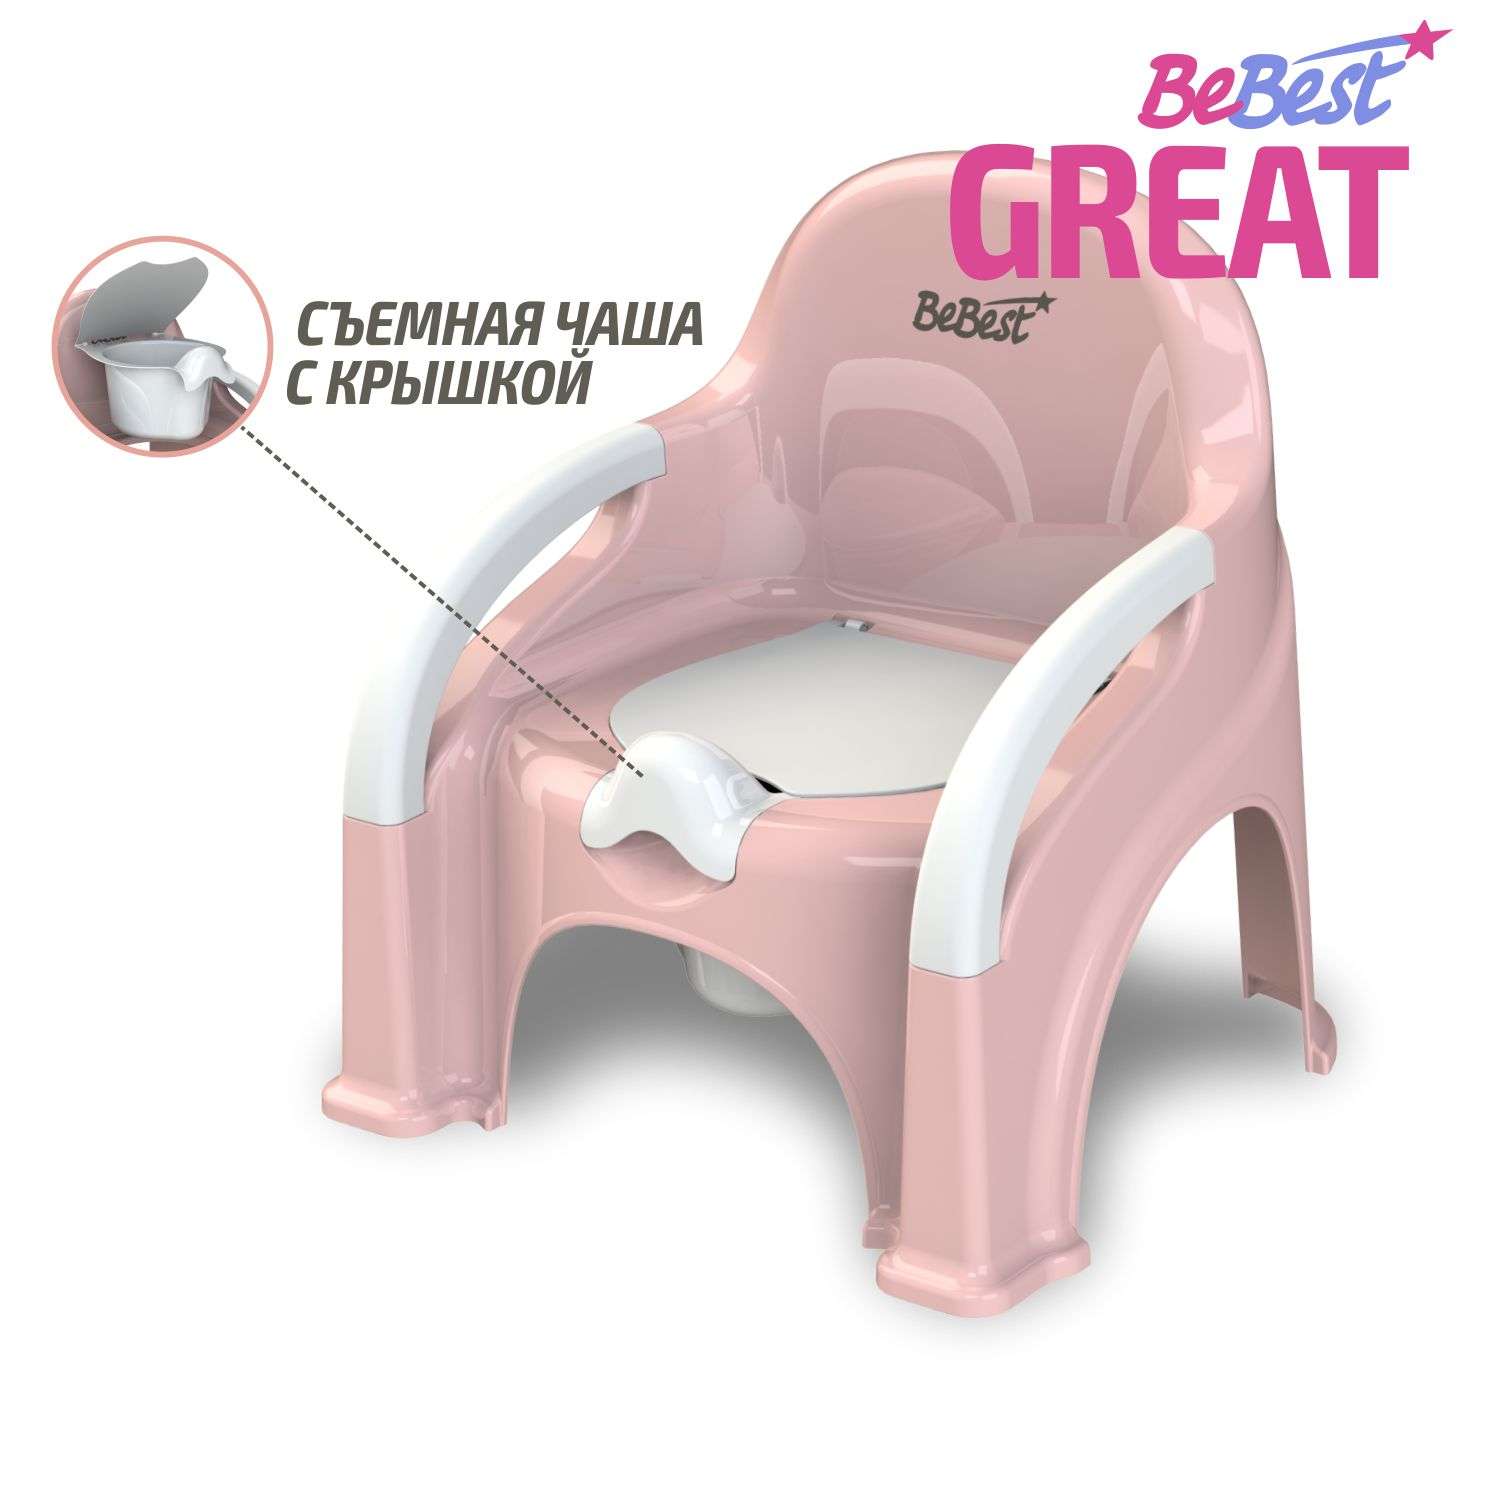 Горшок детский BeBest Great розовый с белой крышкой - фото 1